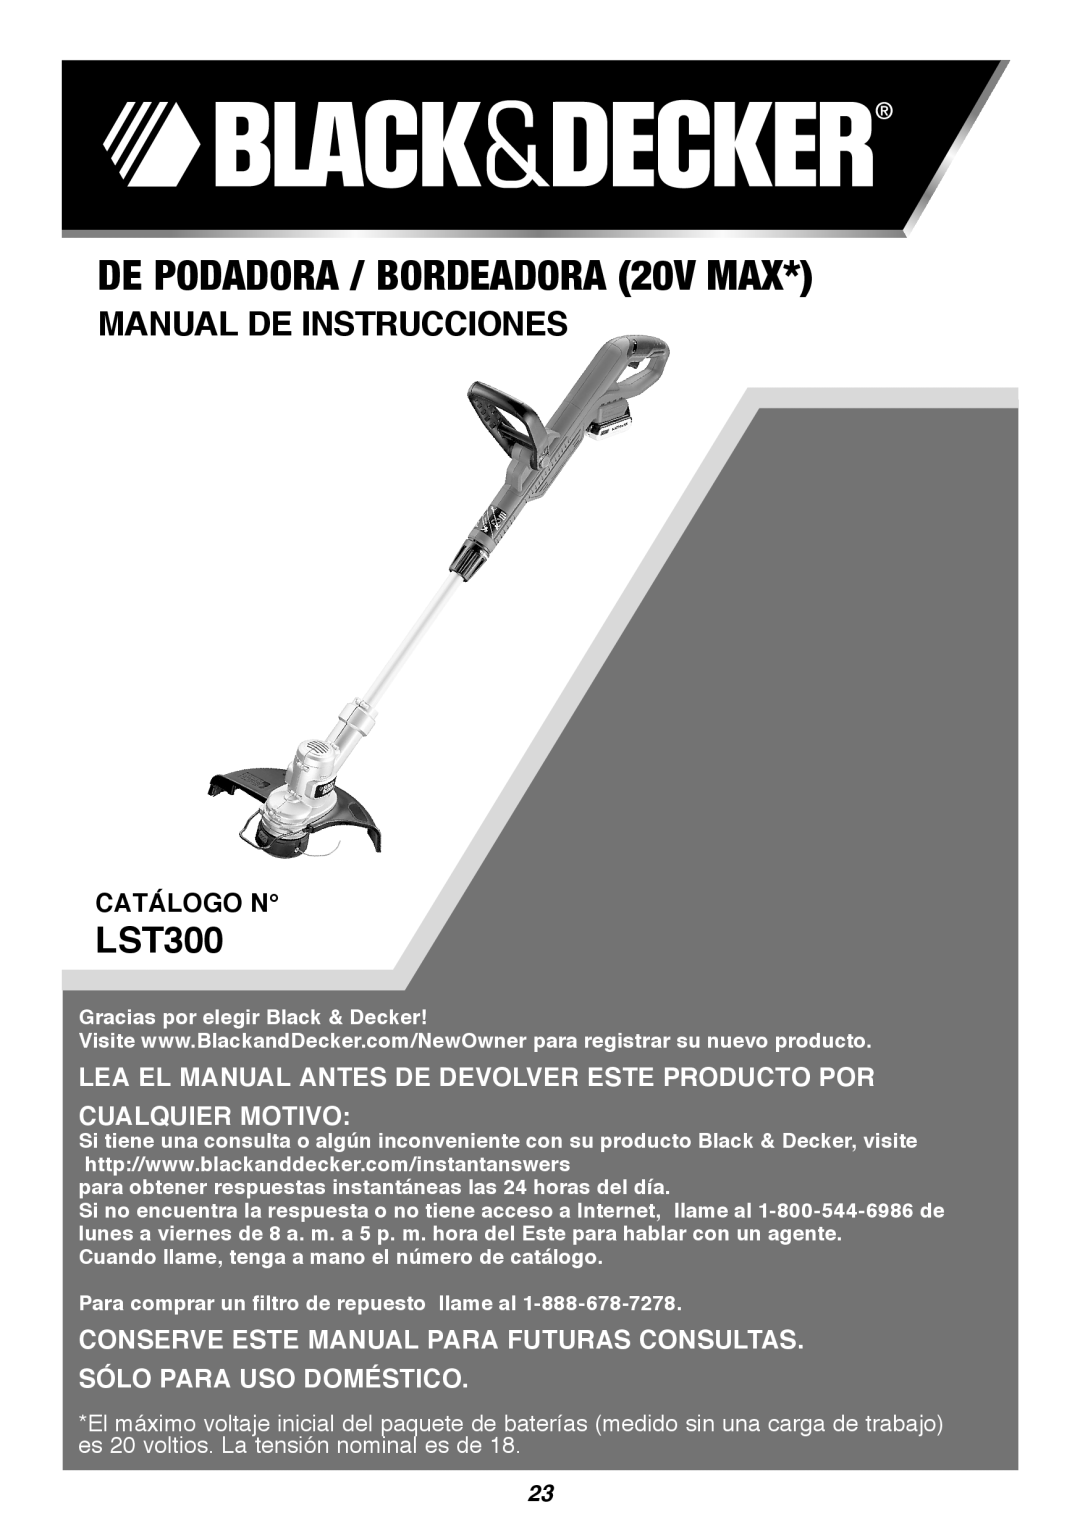 Black & Decker LST300 DE PODADORA / BORDEADORA 20V MAX, Manual De Instrucciones, Catálogo N, Sólo Para Uso Doméstico 